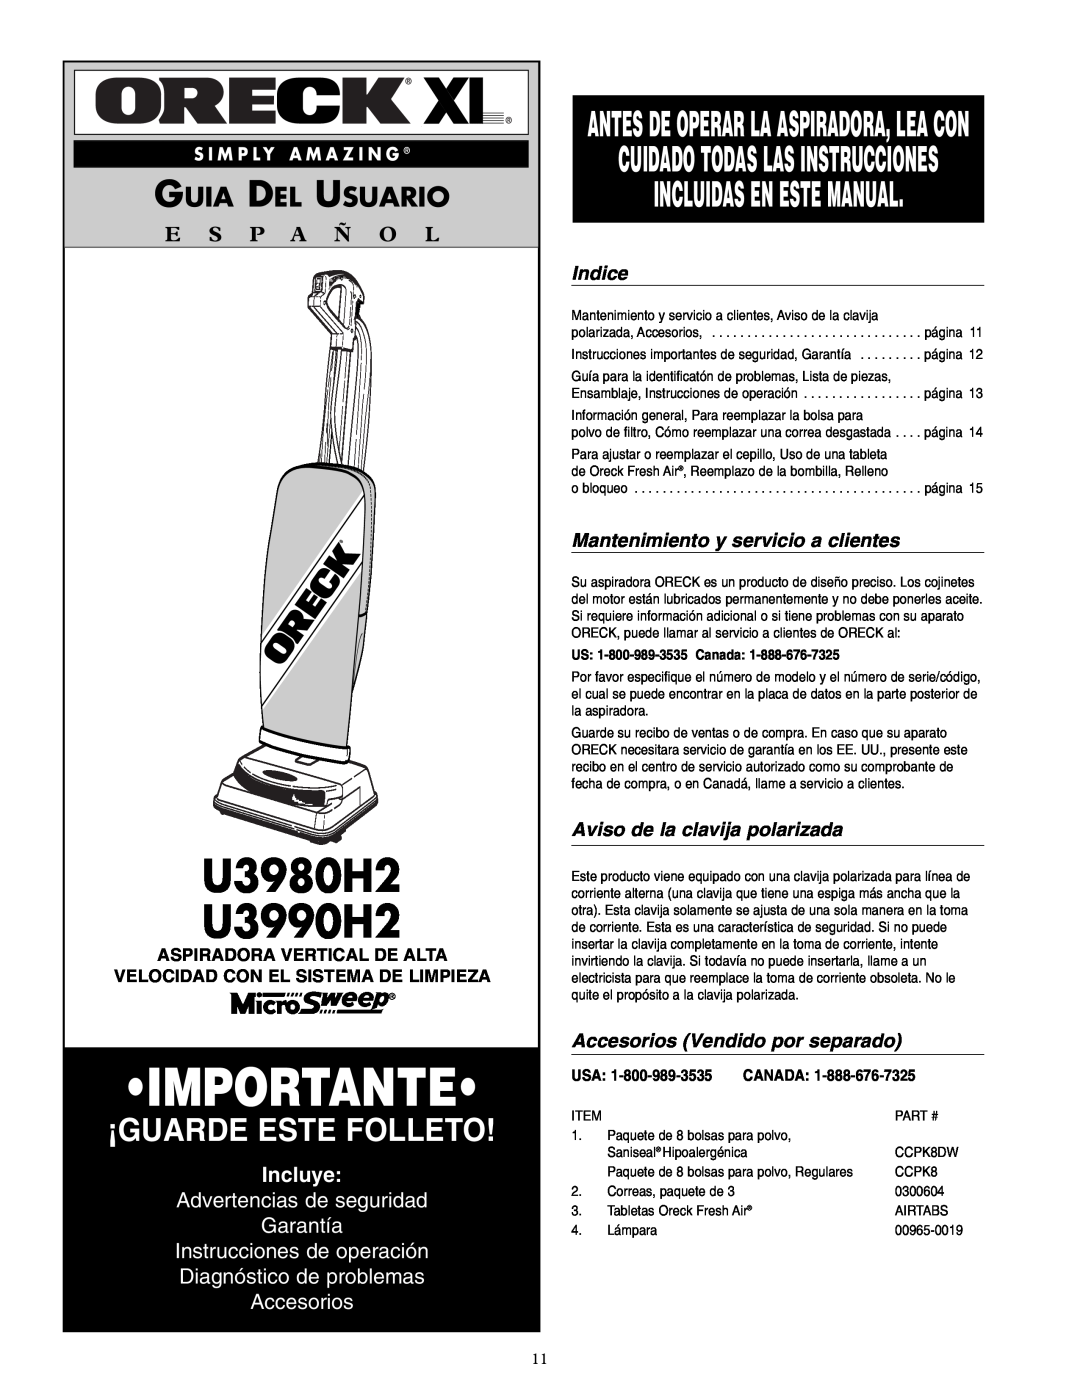 Oreck U3980H2 Incluidas En Este Manual, Guia Del Usuario, E S P A Ñ O L, Incluye, Advertencias de seguridad Garantía 